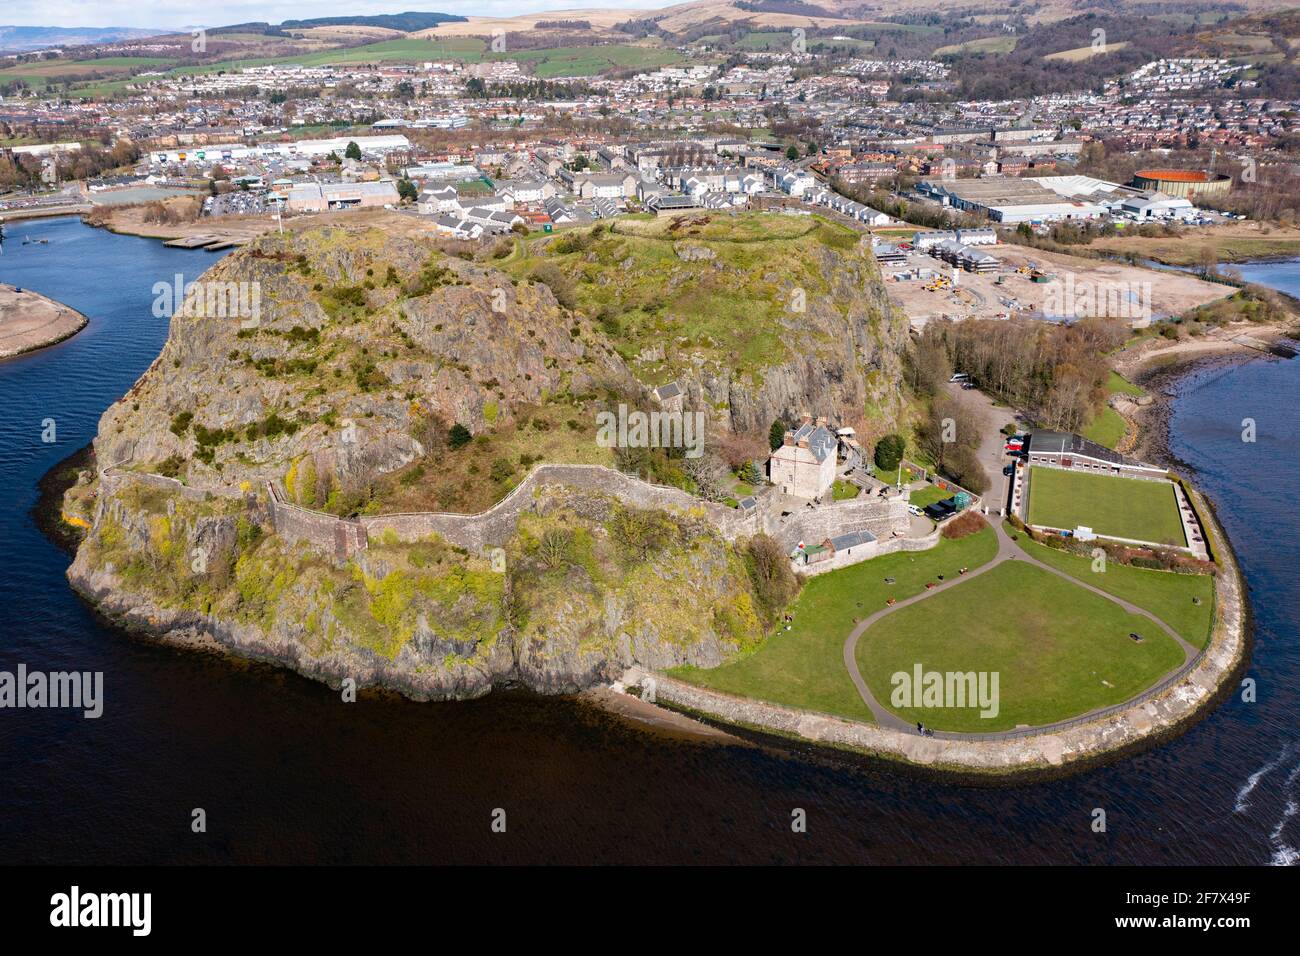 Vista aerea dal drone del castello di Dumbarton (chiuso durante la chiusura del Covid-19) su Dumbarton Rock accanto al fiume Clyde, Scozia, Regno Unito Foto Stock